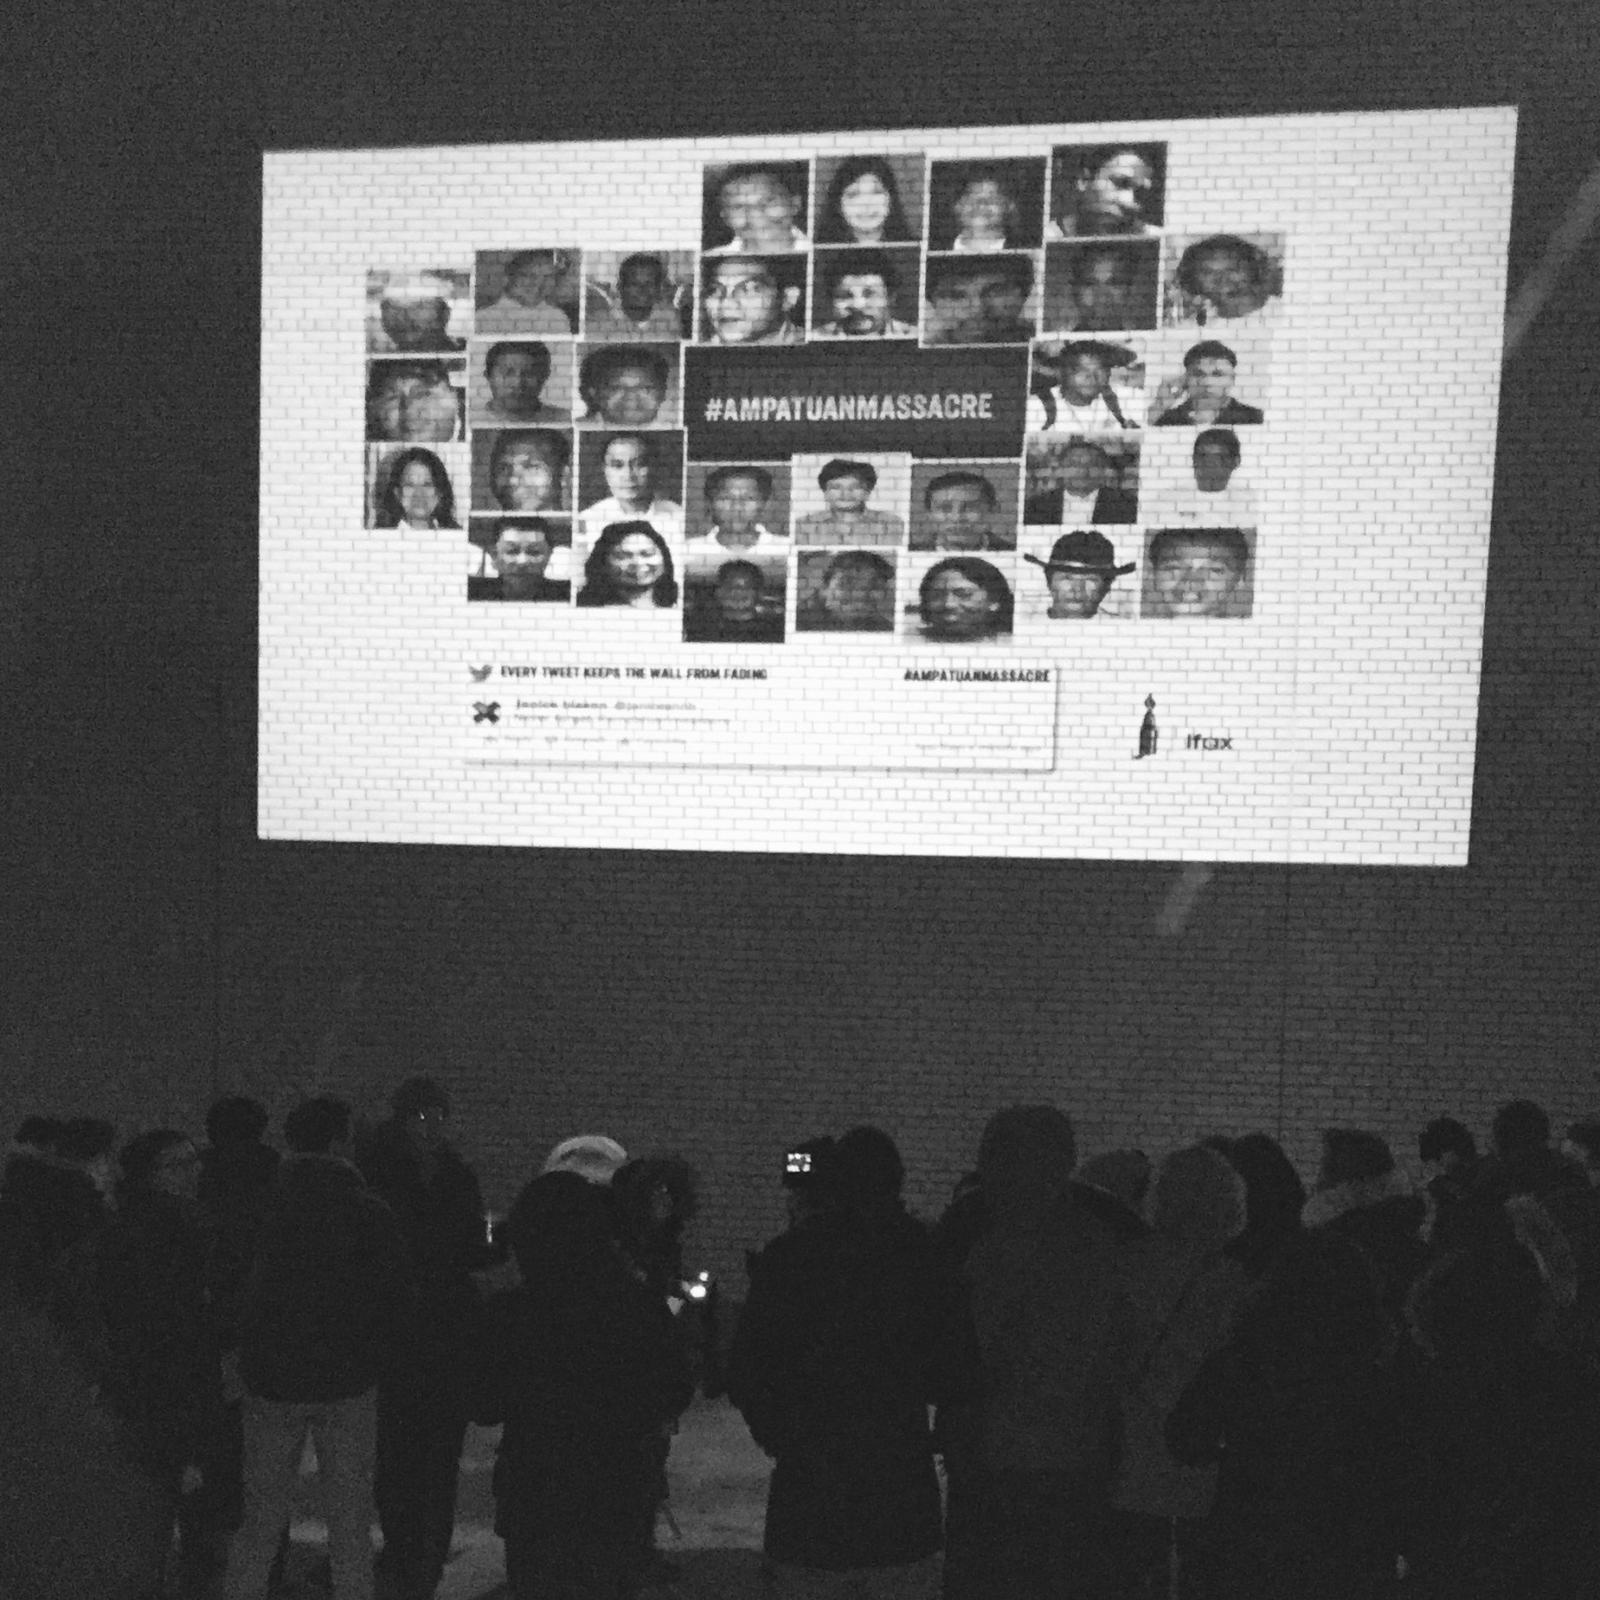 Des Torontois se sont rassemblés le 2 décembre pour tweeter des appels à la justice dans l’affaire du Massacre d’Ampatuan